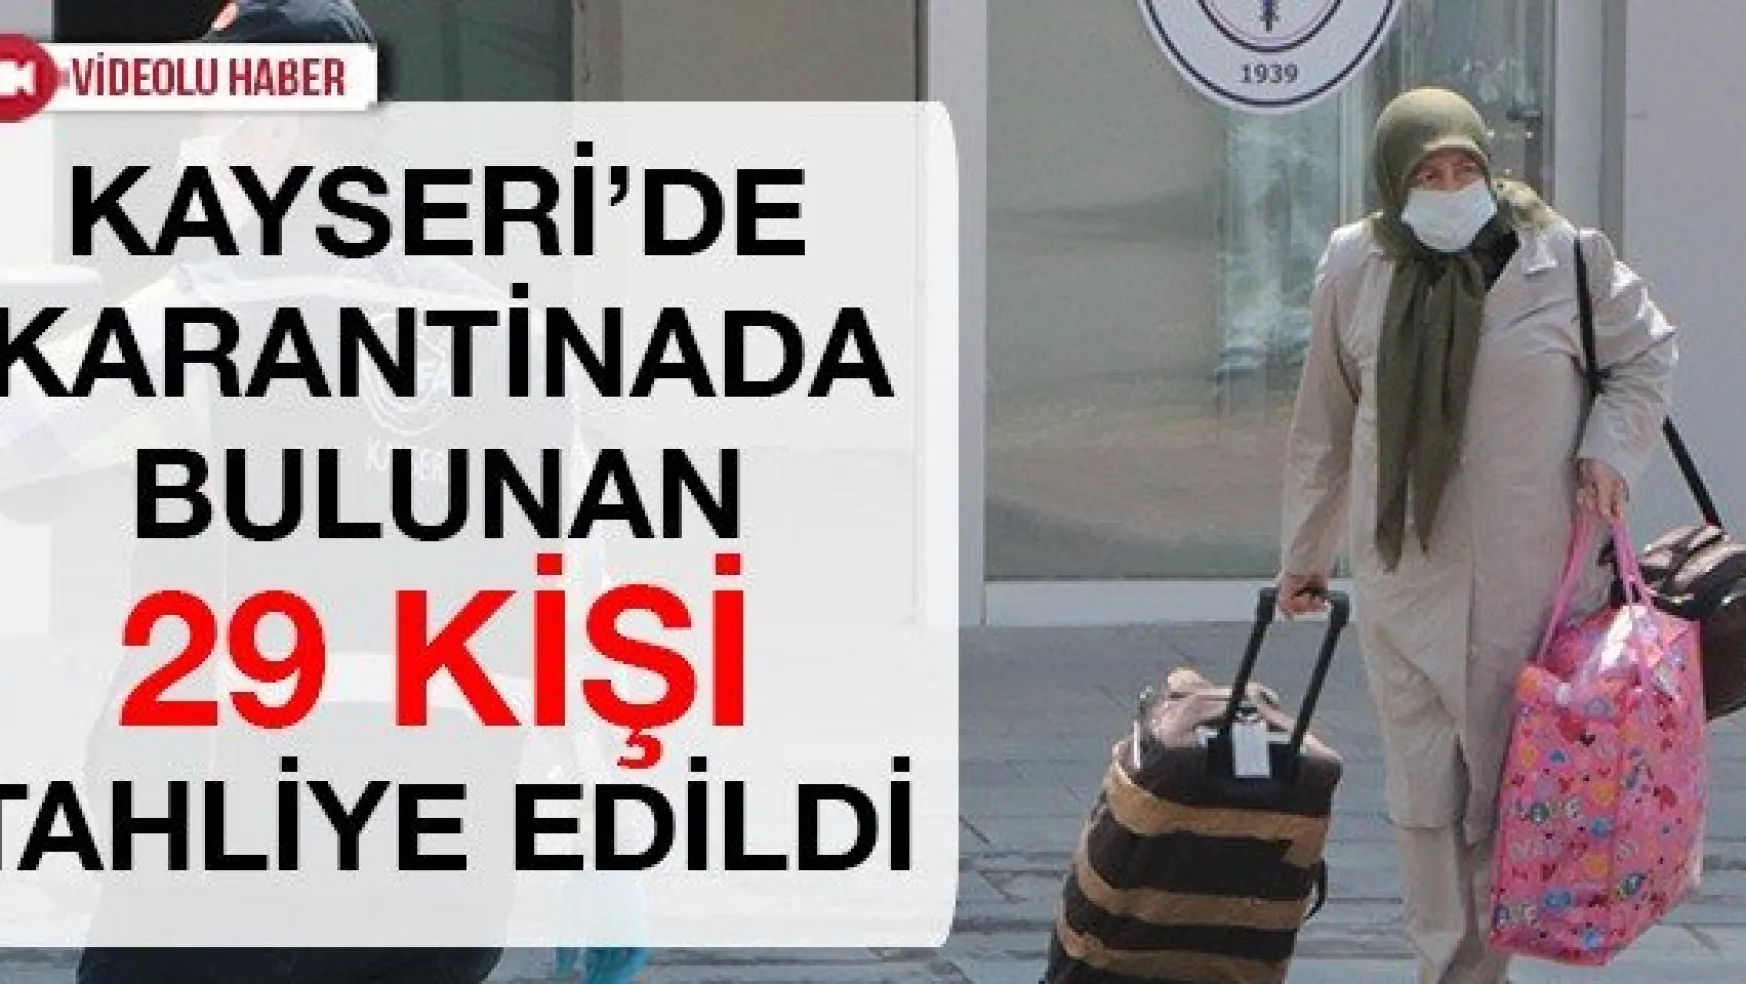 Kayseri'de karantinada bulunan 29 kişi tahliye edildi